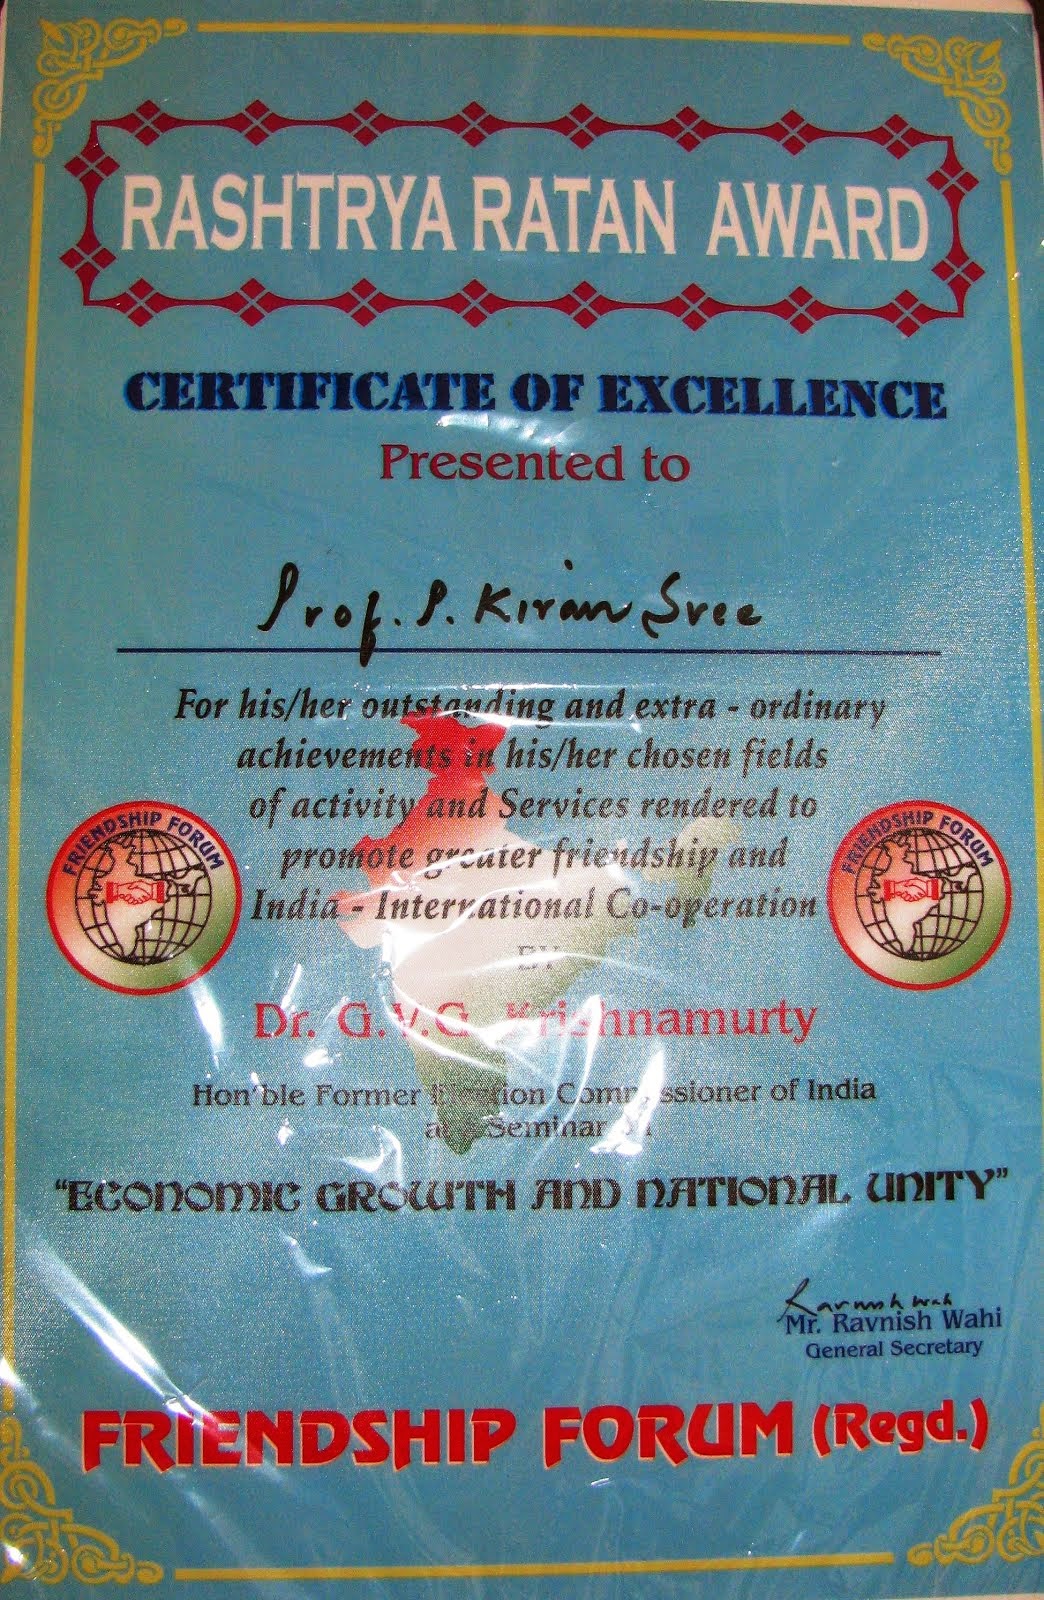 Rashtrya Ratan Award